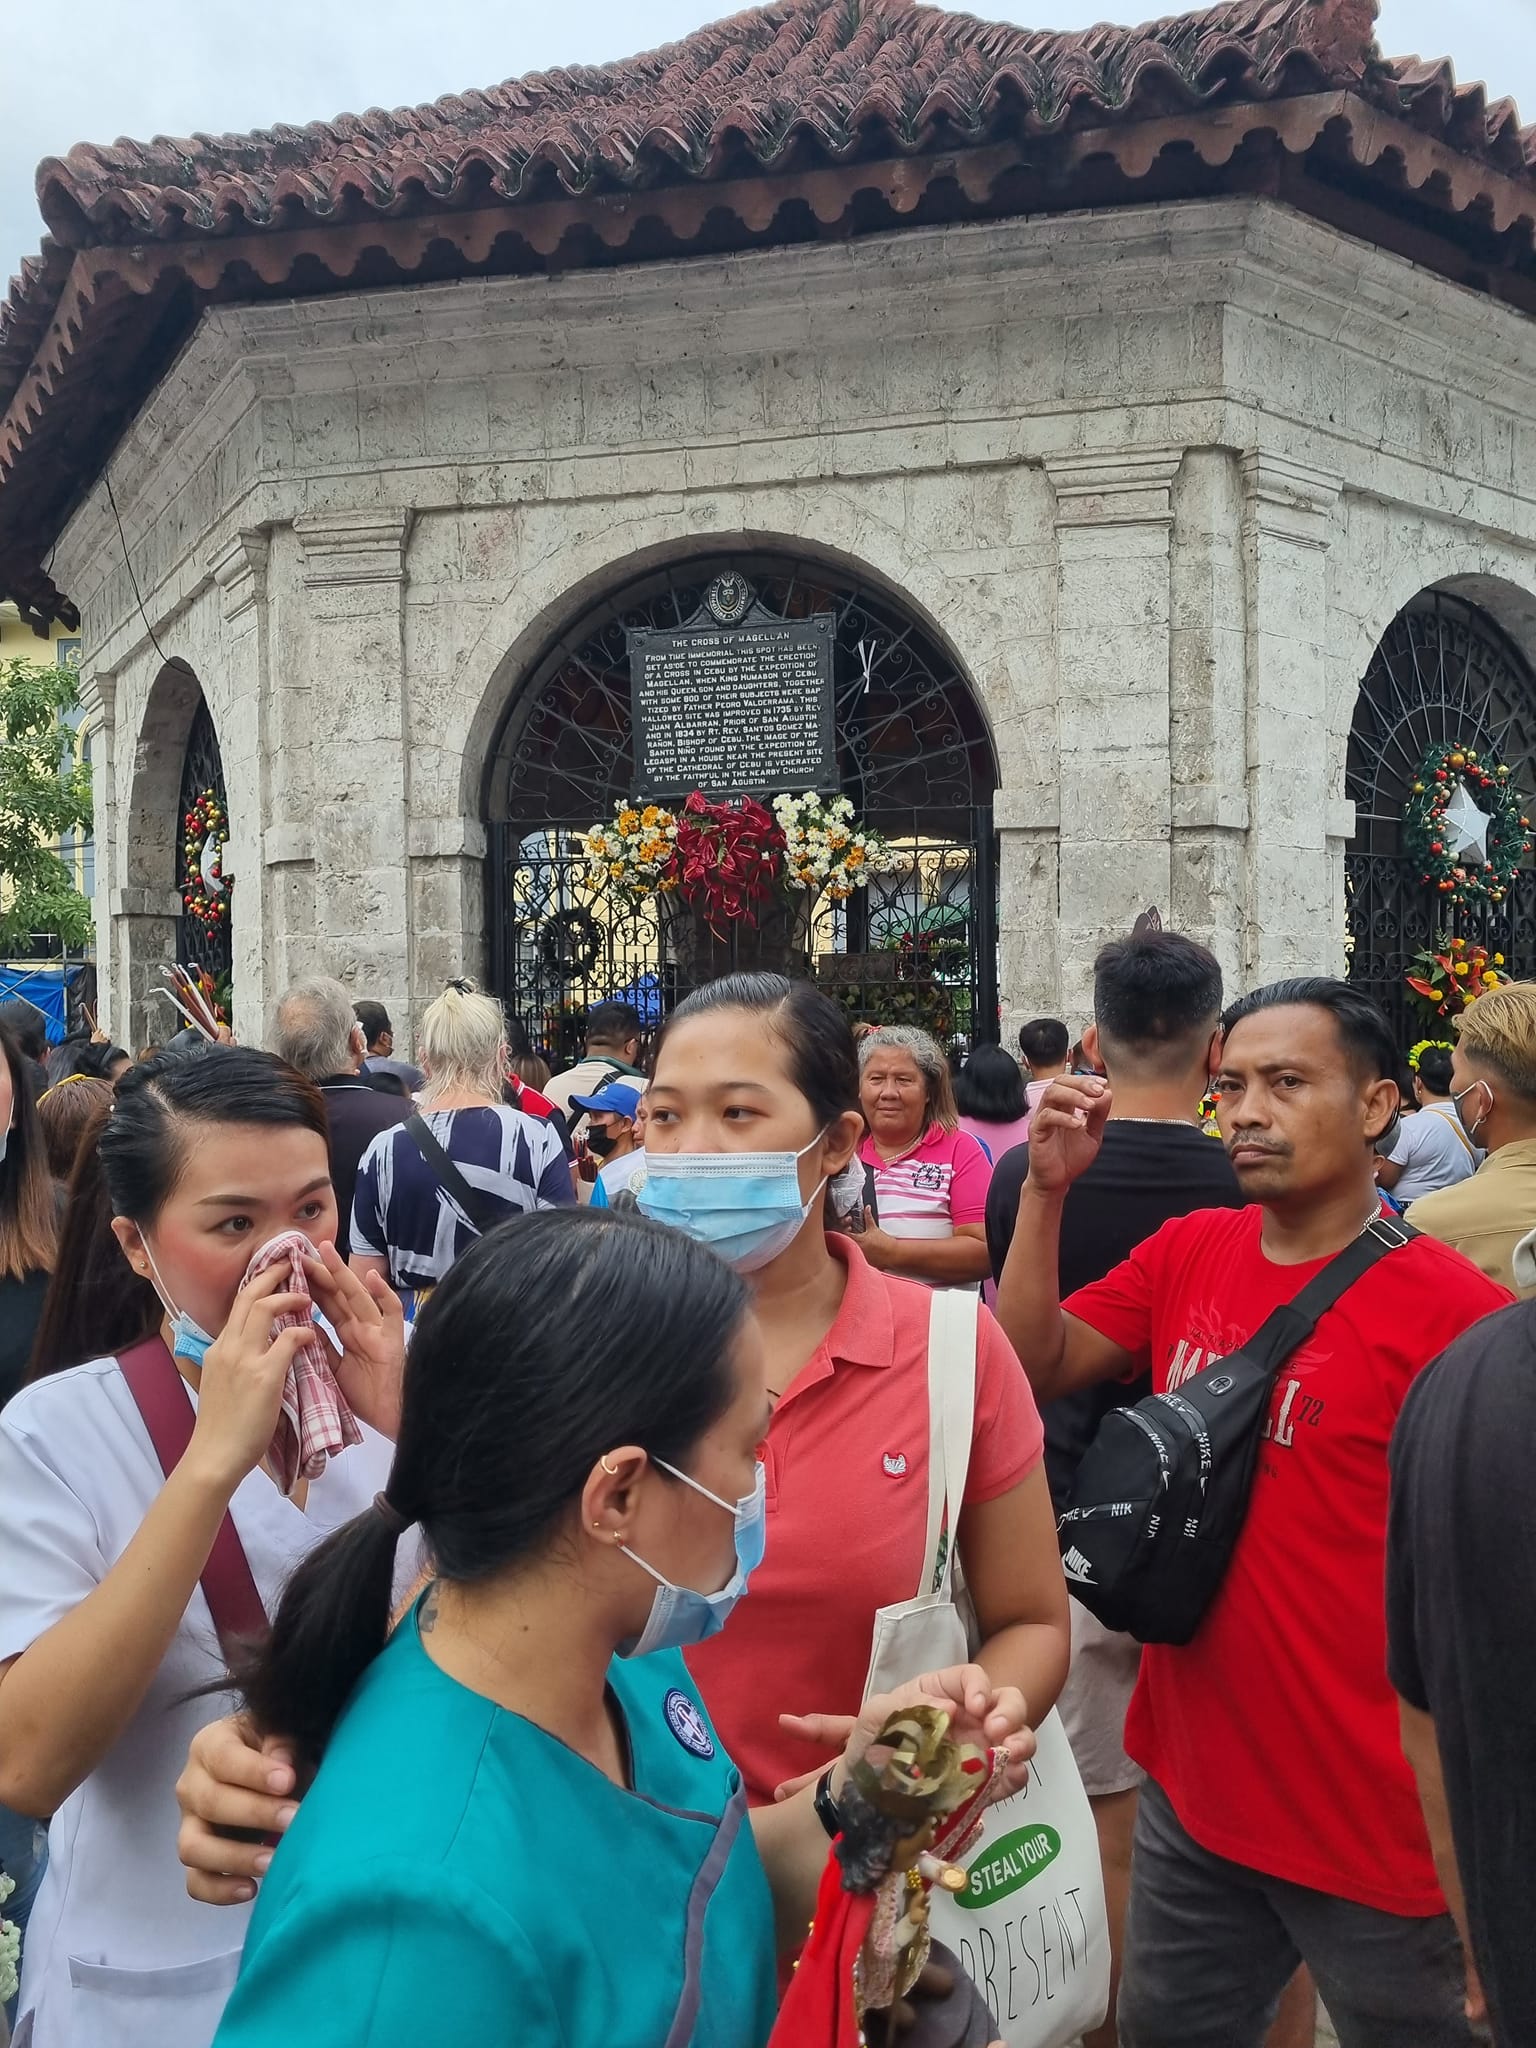 הקהל הפיליפיני עורג לטקסיות הקתולית המושפעת לא מעט מעבודת אלילים שקדמה להשתלטות הספרדים על האיים לפני 450 שנים